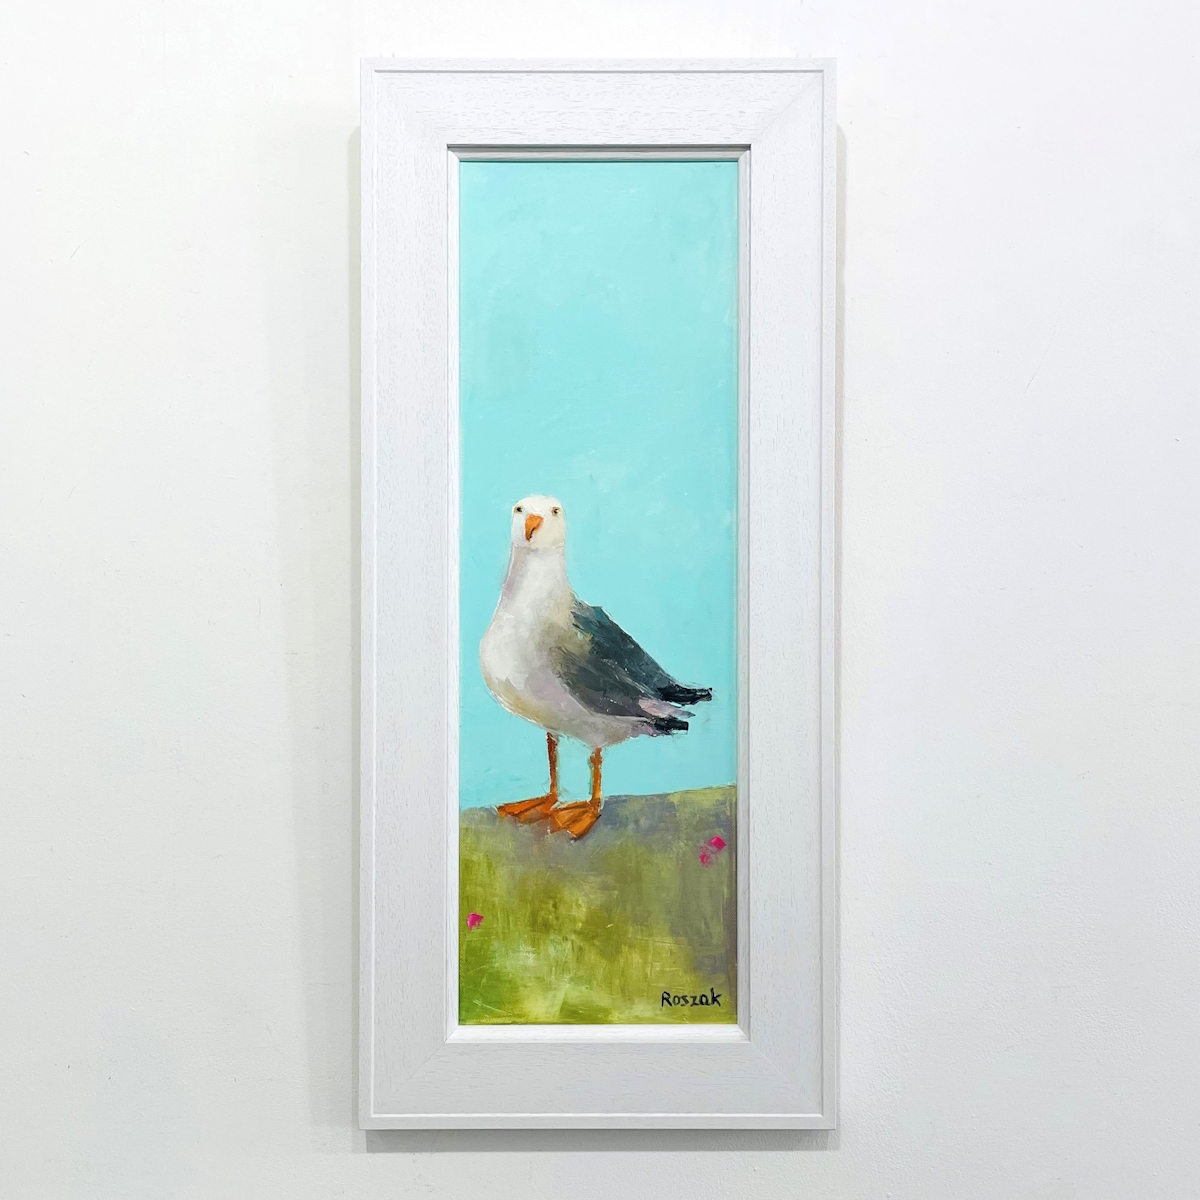 'Bird' by artist Basia Roszak